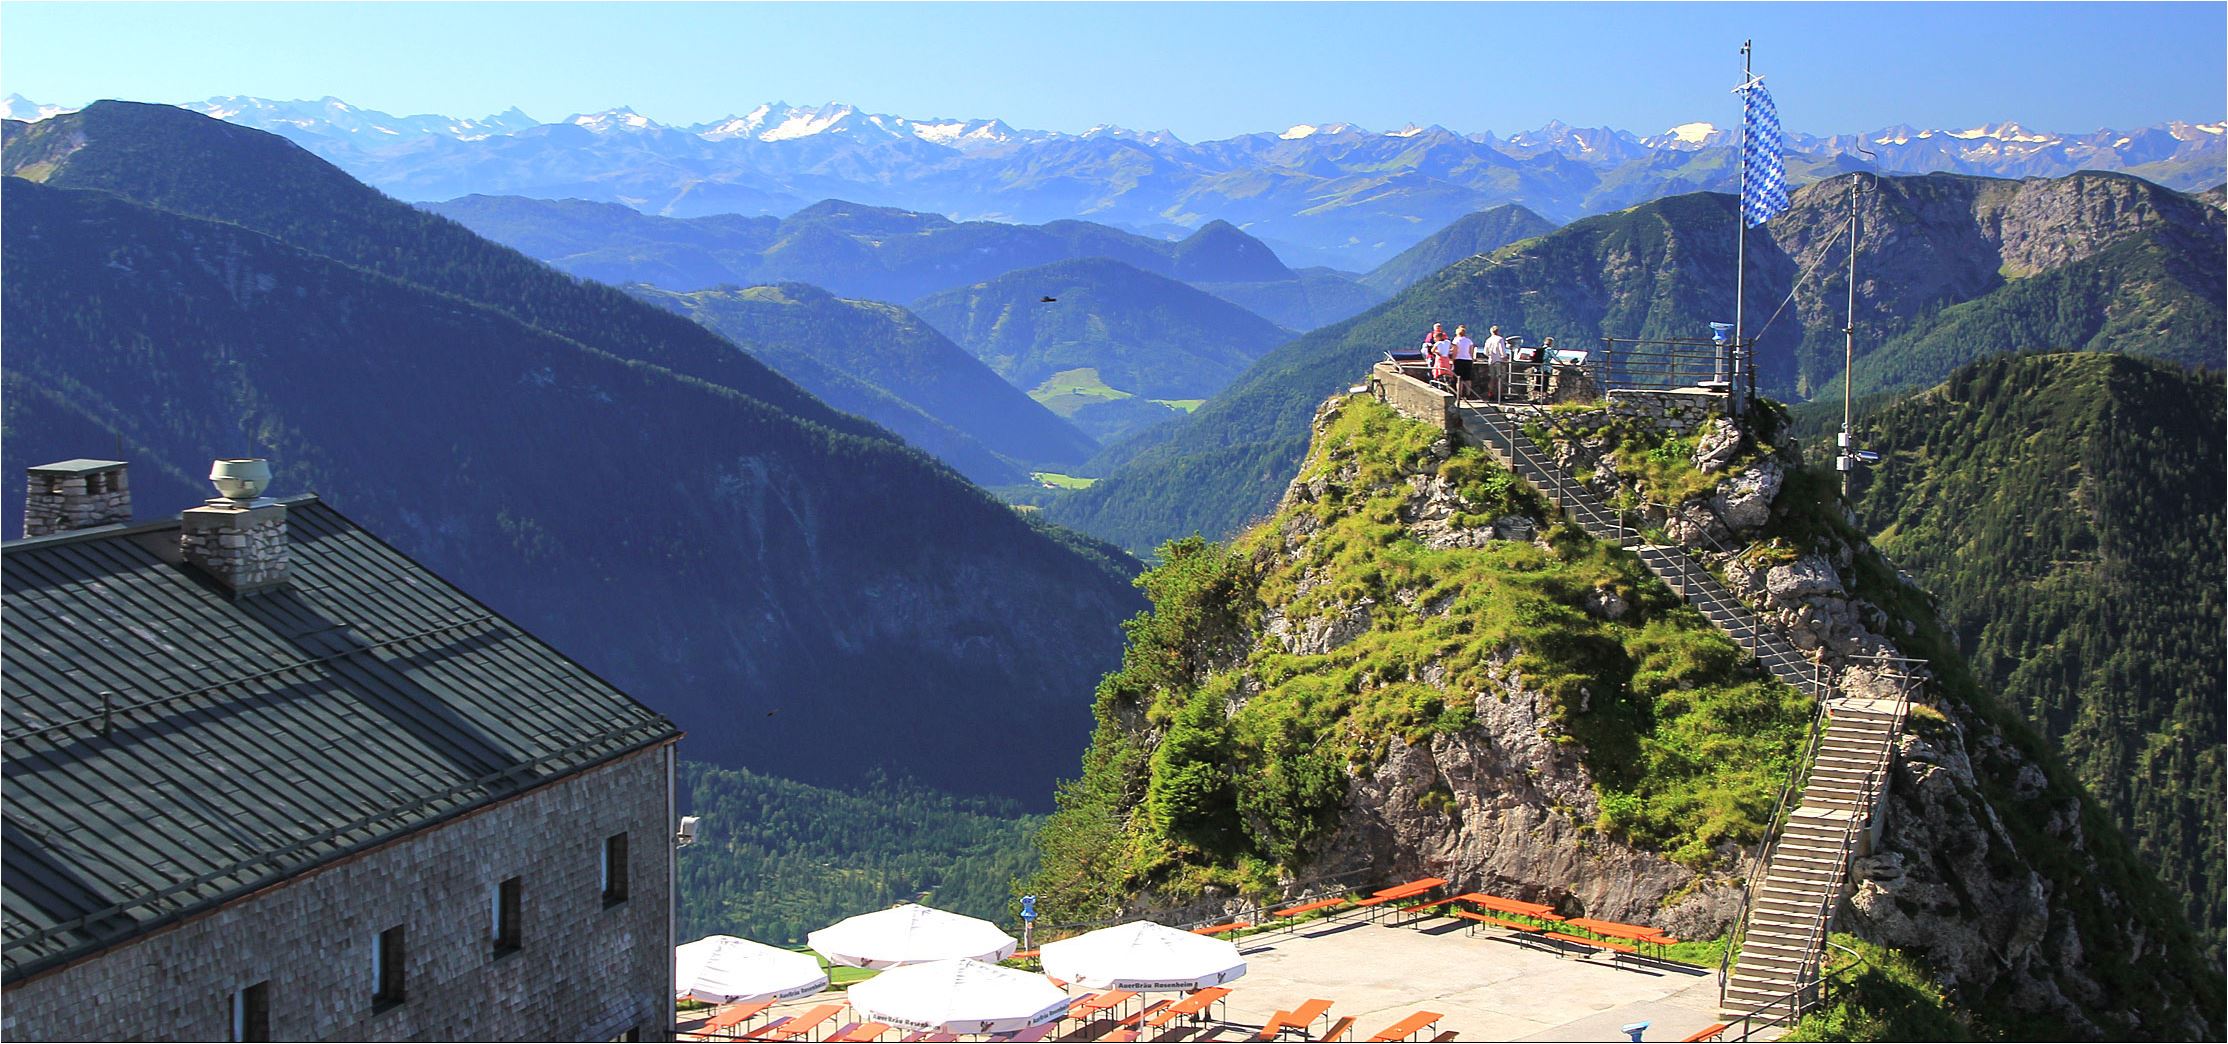 Unternehmen Sie verschiedenste Tagesausflüge in die Alpen und genießen Sie das unglaubliche Bergpanorama